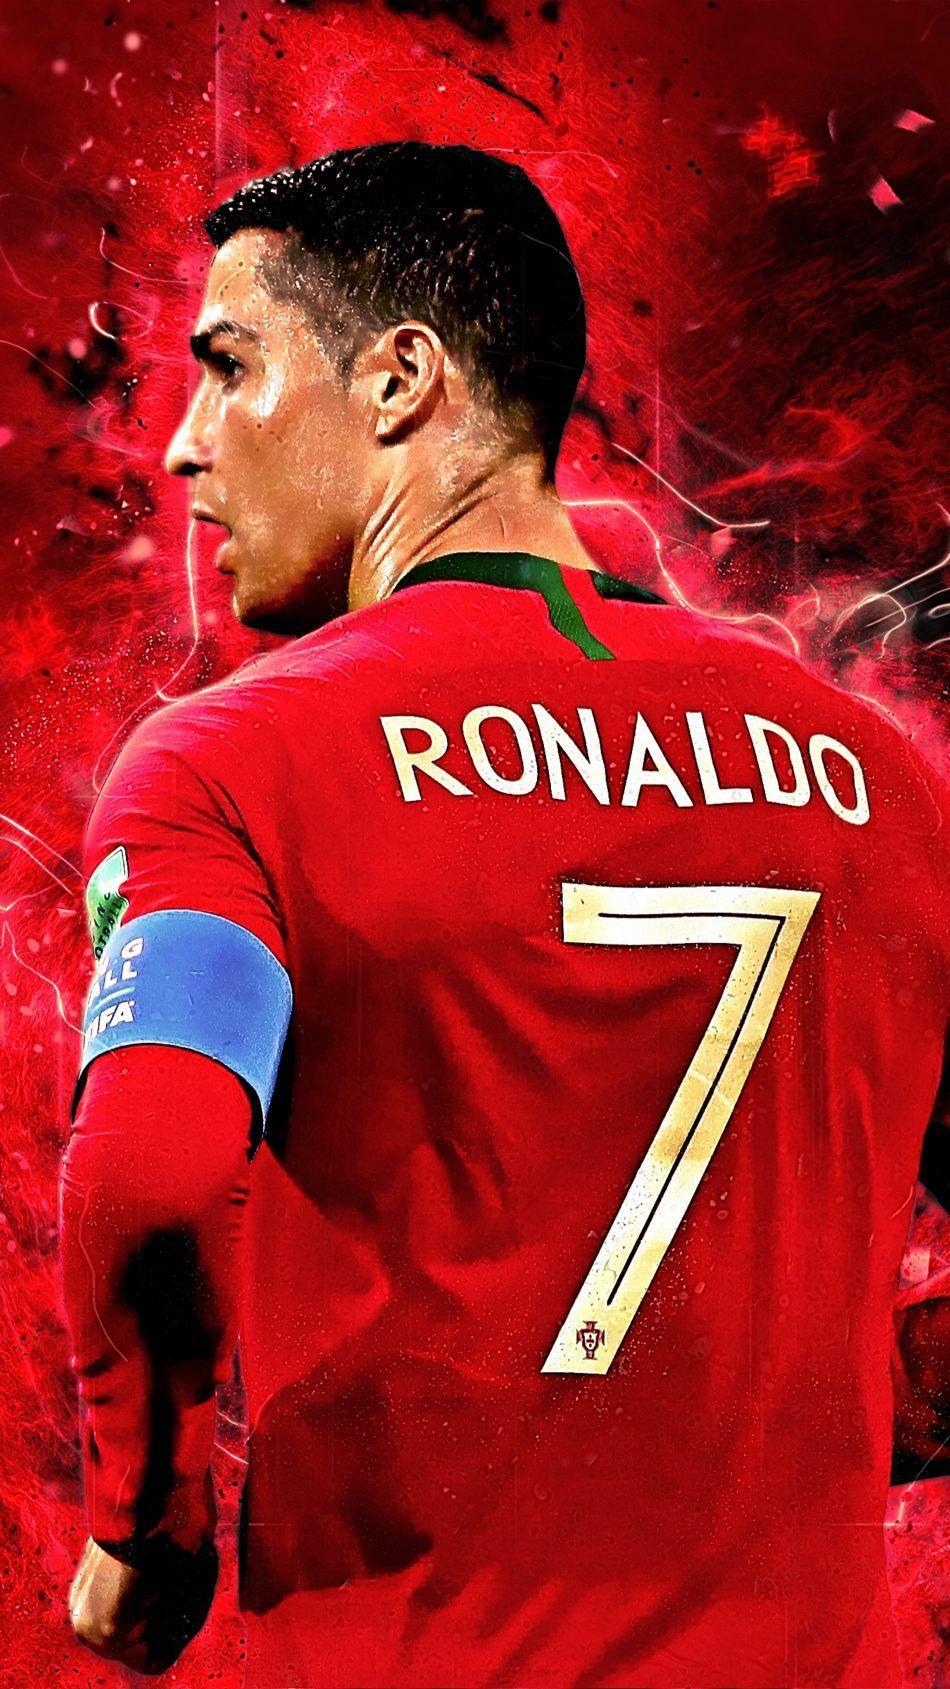 Cristiano Ronaldo Hd 4K Wallpapers - Top Nhá»¯ng HÃ¬nh áº¢nh Ä�áº¹p